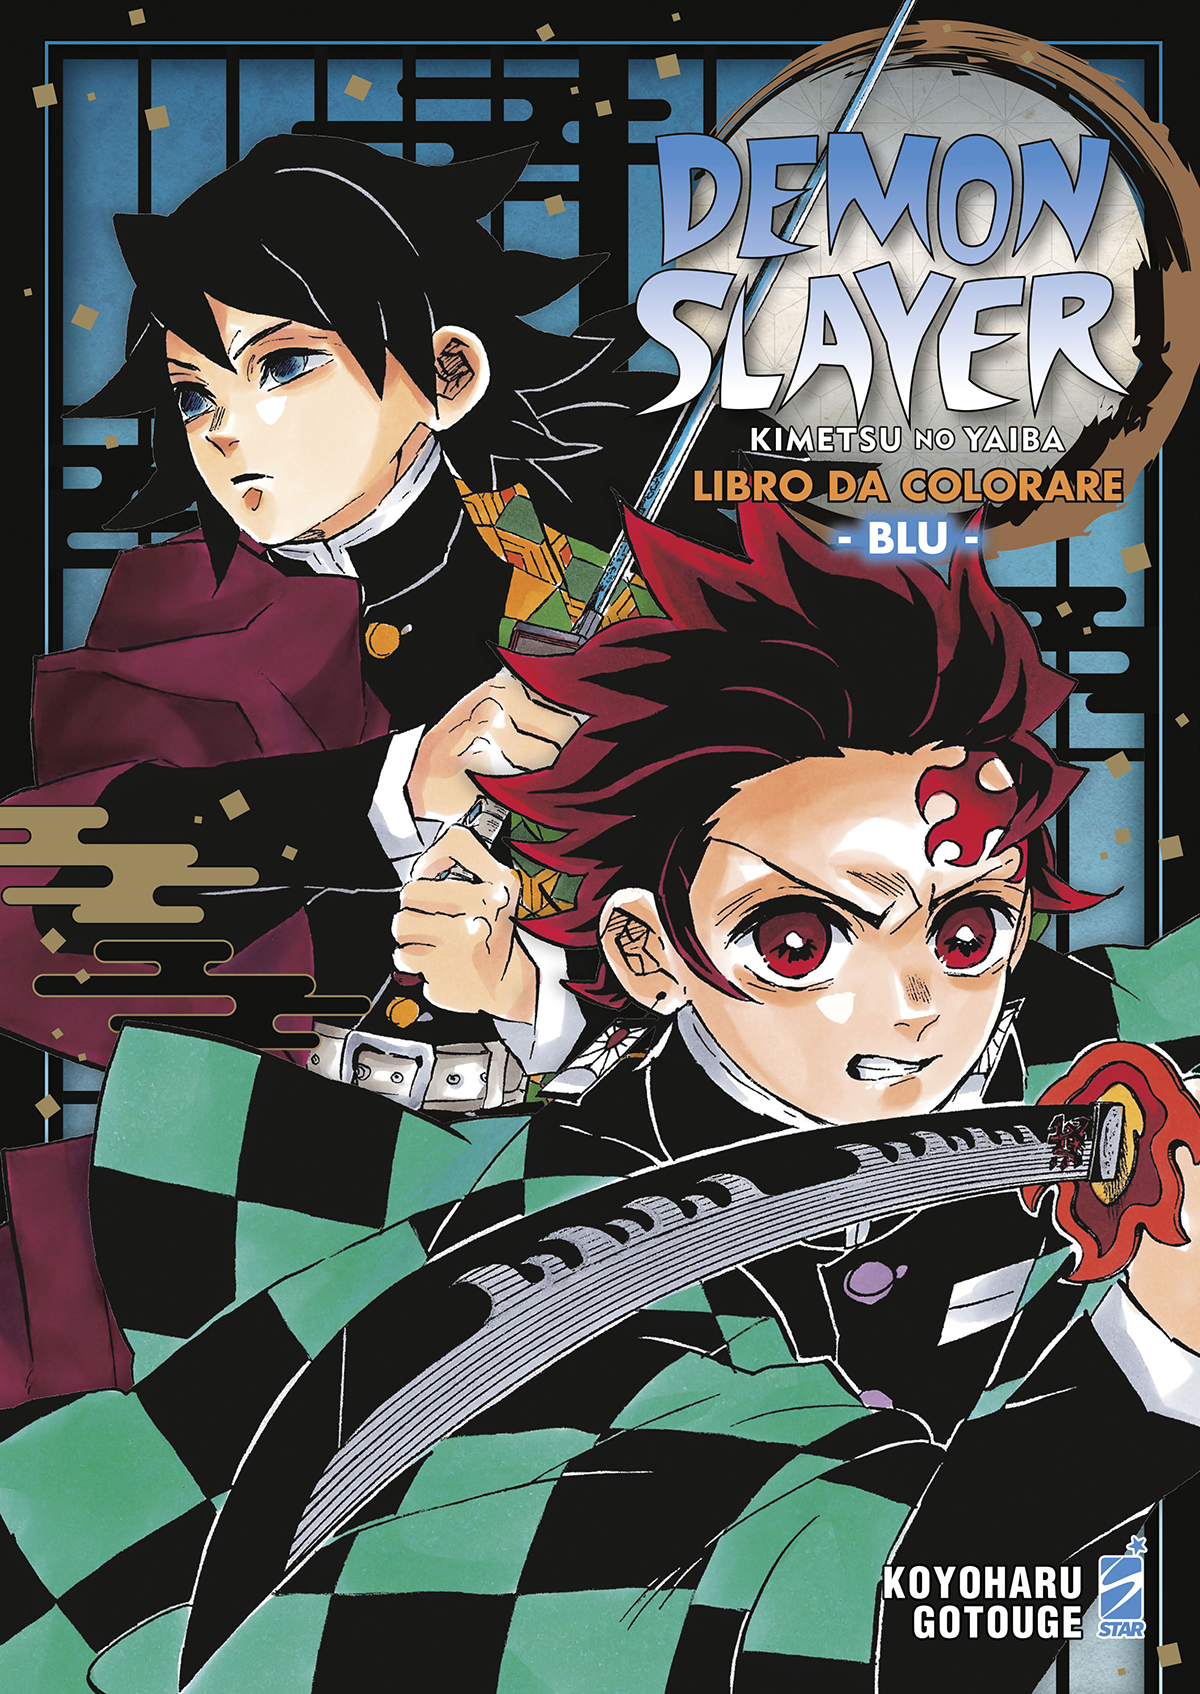 Star Comics  DEMON SLAYER - KIMETSU NO YAIBA LIBRO DA COLORARE 2 - BLU